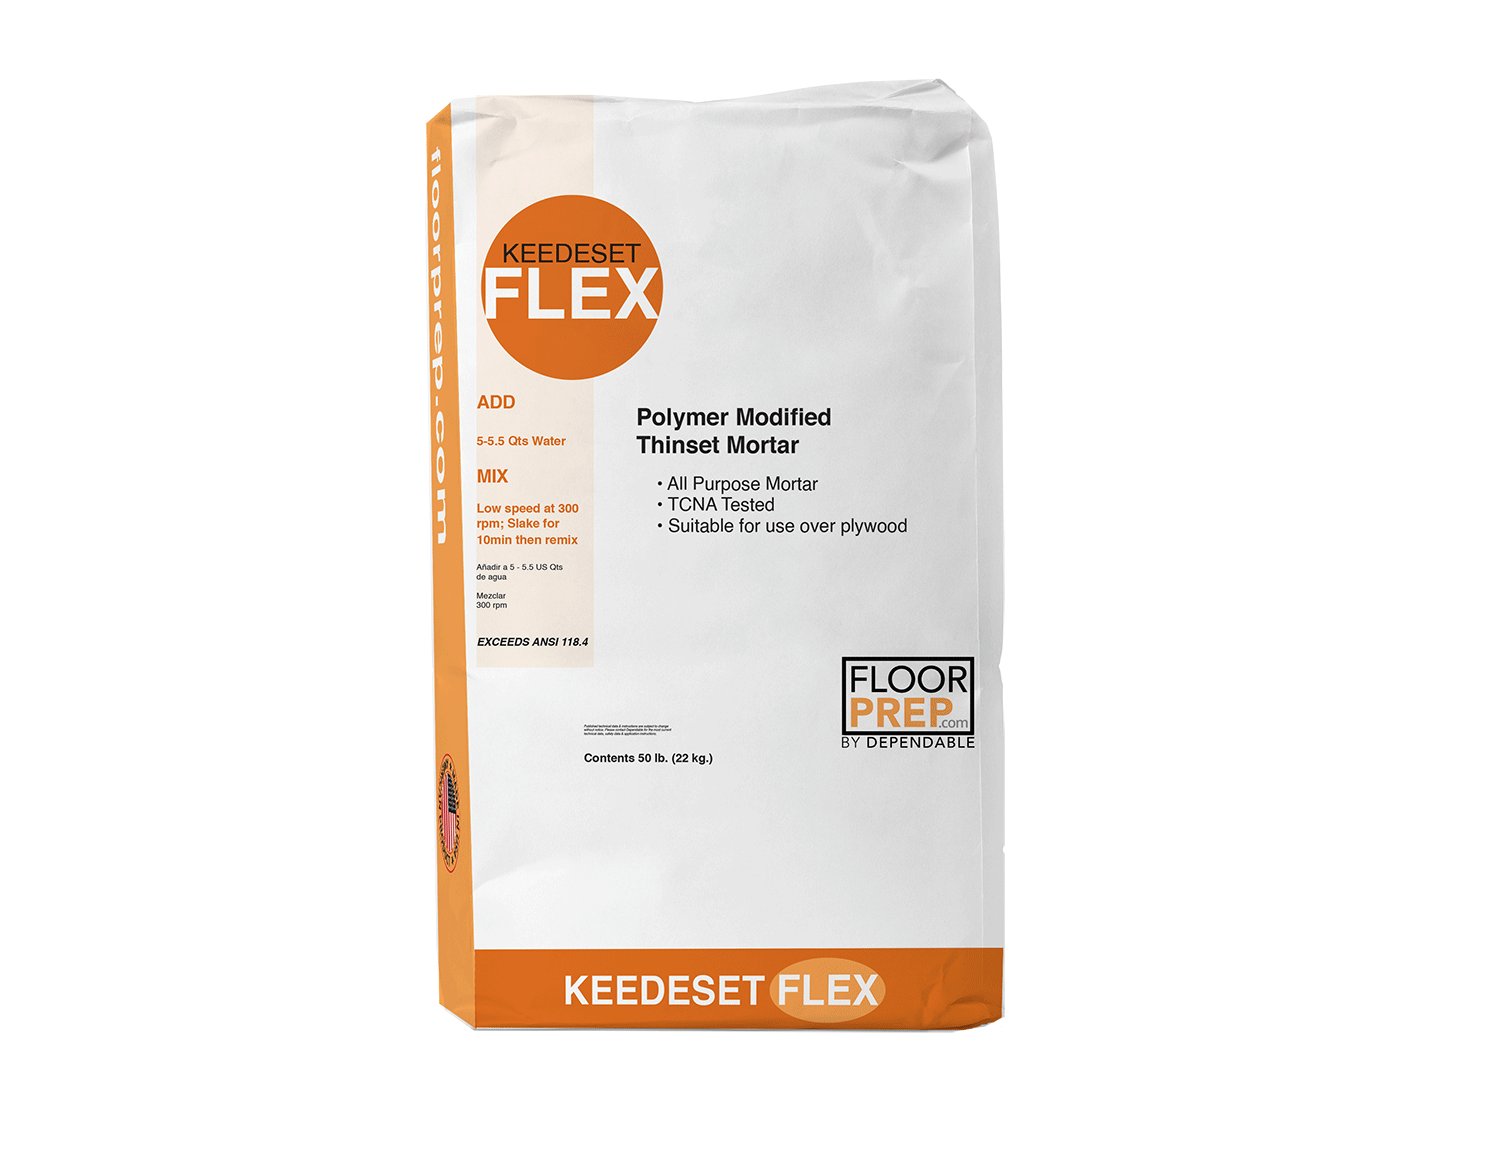 KEEDESET FLEX package